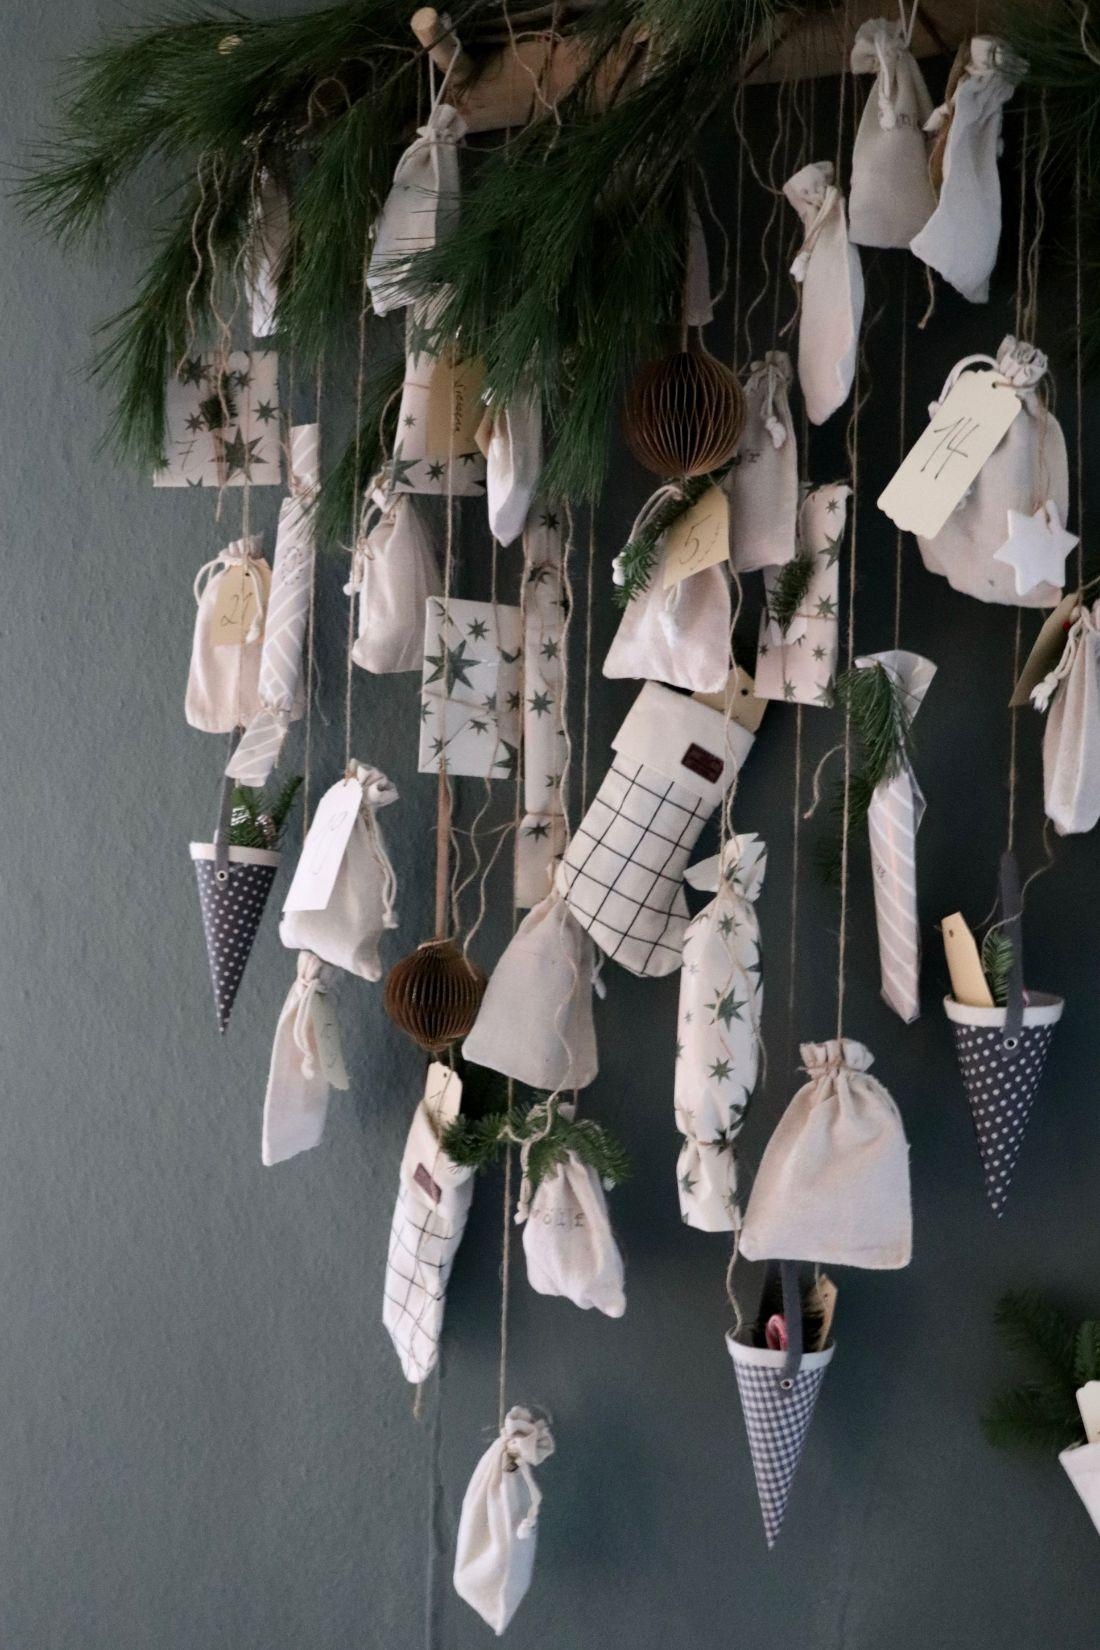 DIY Adventskalender mit Jutesäckchen, Päckchen und Stiefeln. .#brittabloggt #weihnachten#diy#adventskalender#scandinavia